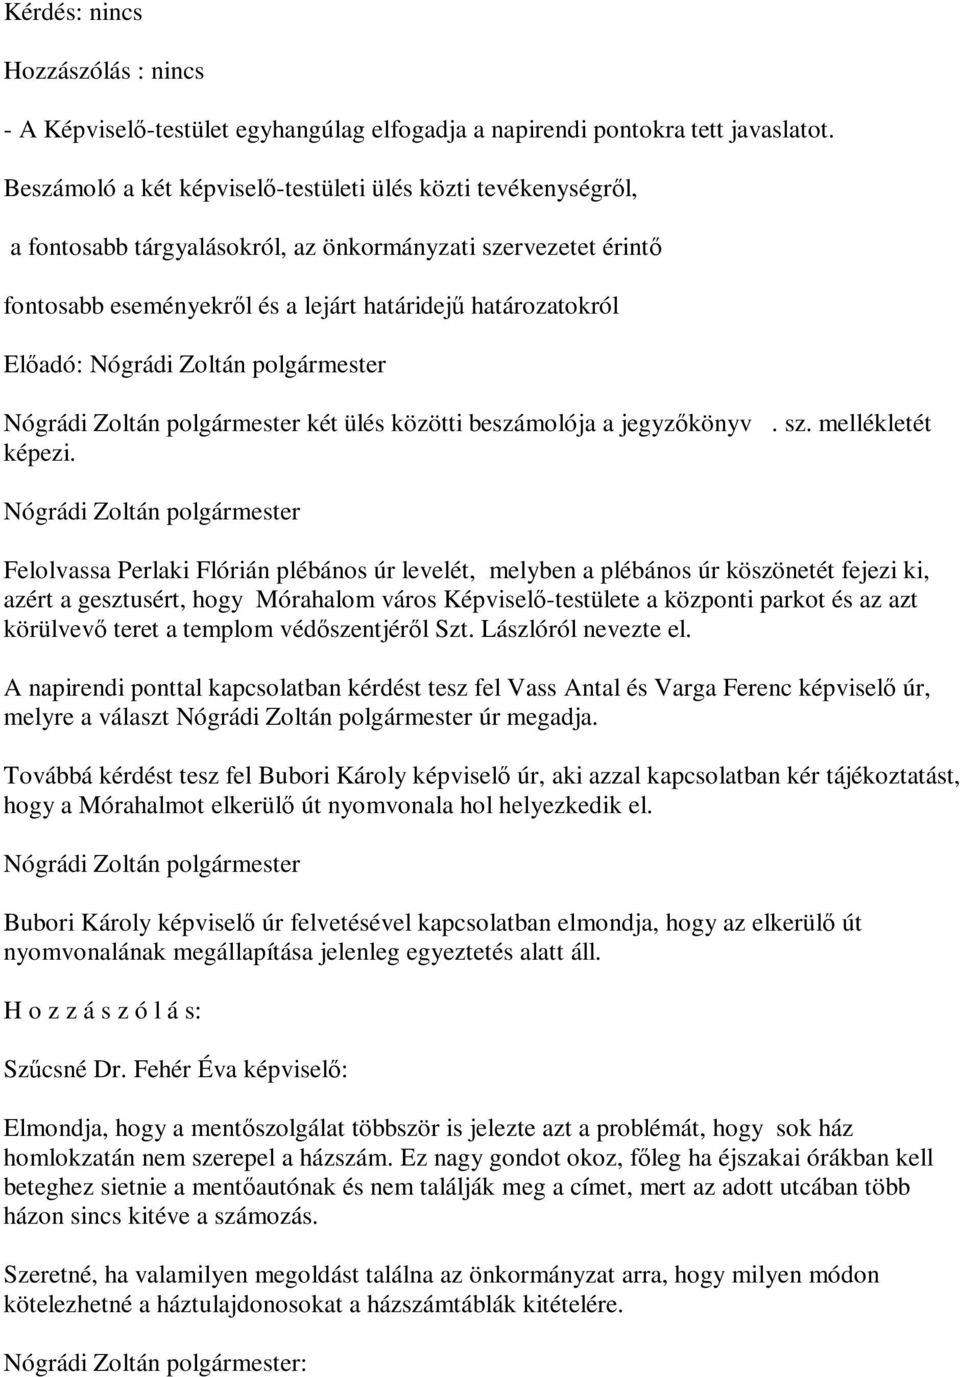 Zoltán polgármester két ülés közötti beszámolója a jegyzőkönyv. sz. mellékletét képezi.